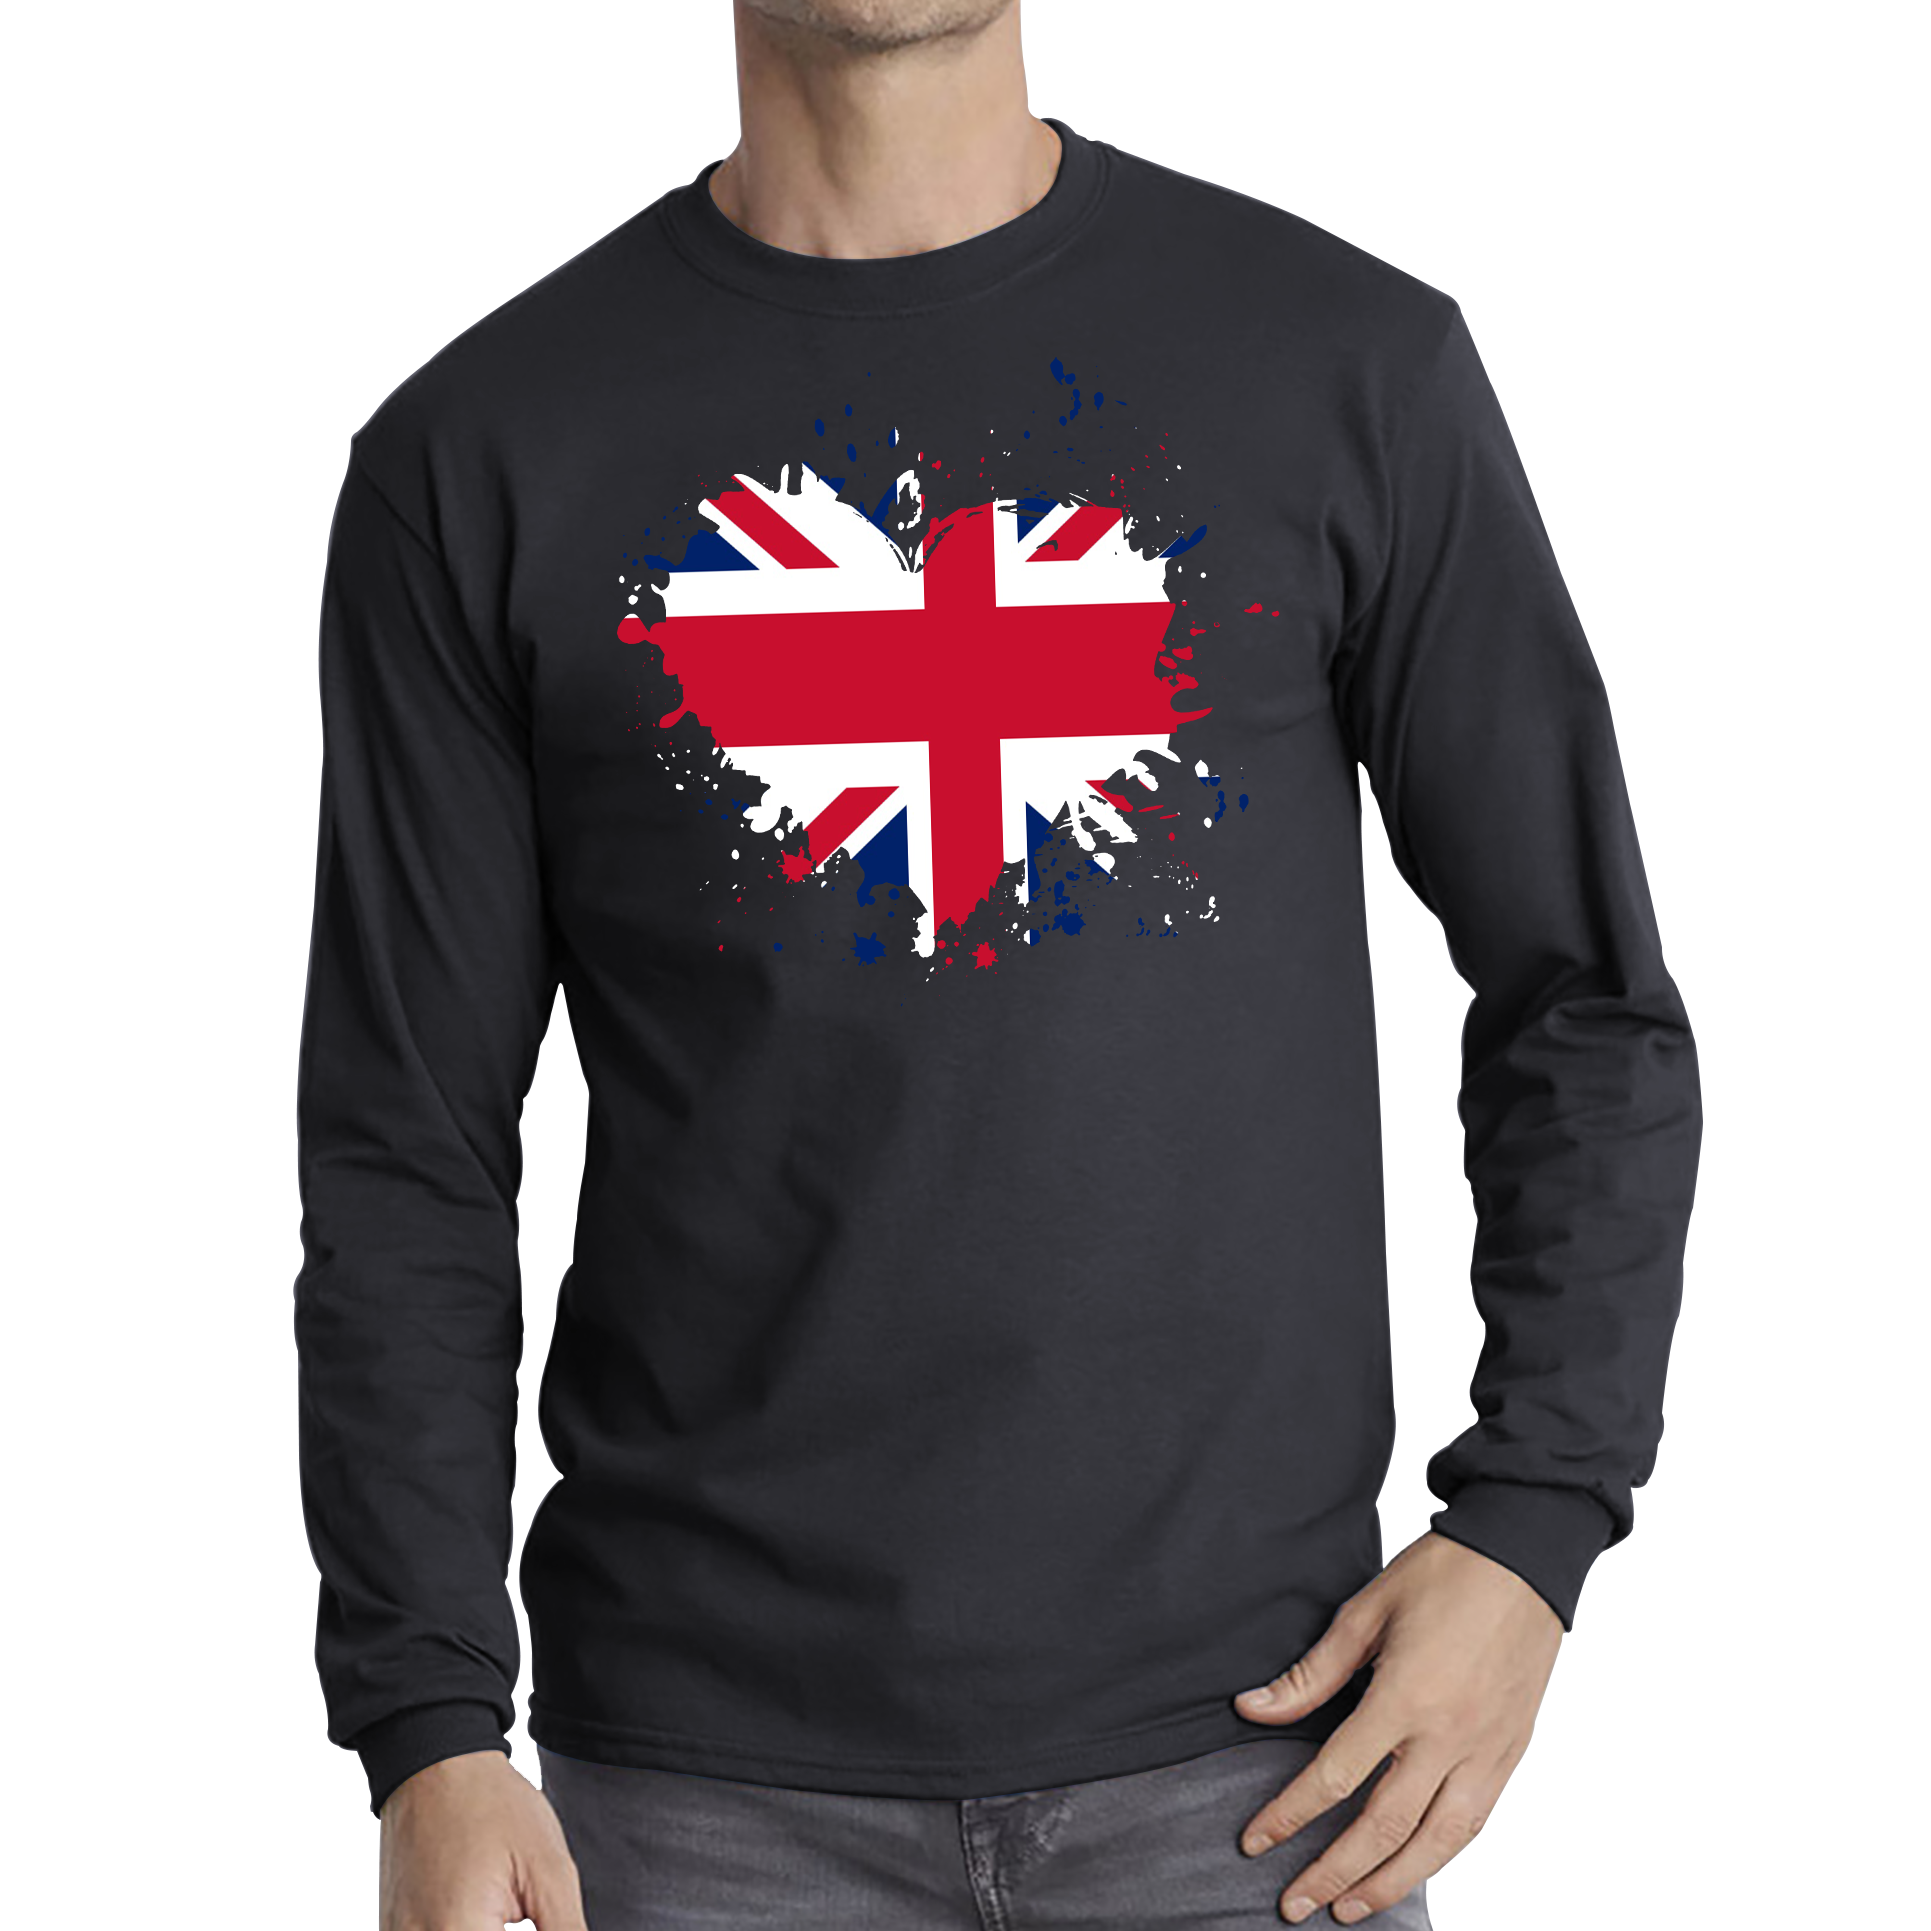 Union Jack UK Flag Heart Britain England United Kingdom Long Sleeve T Shirt